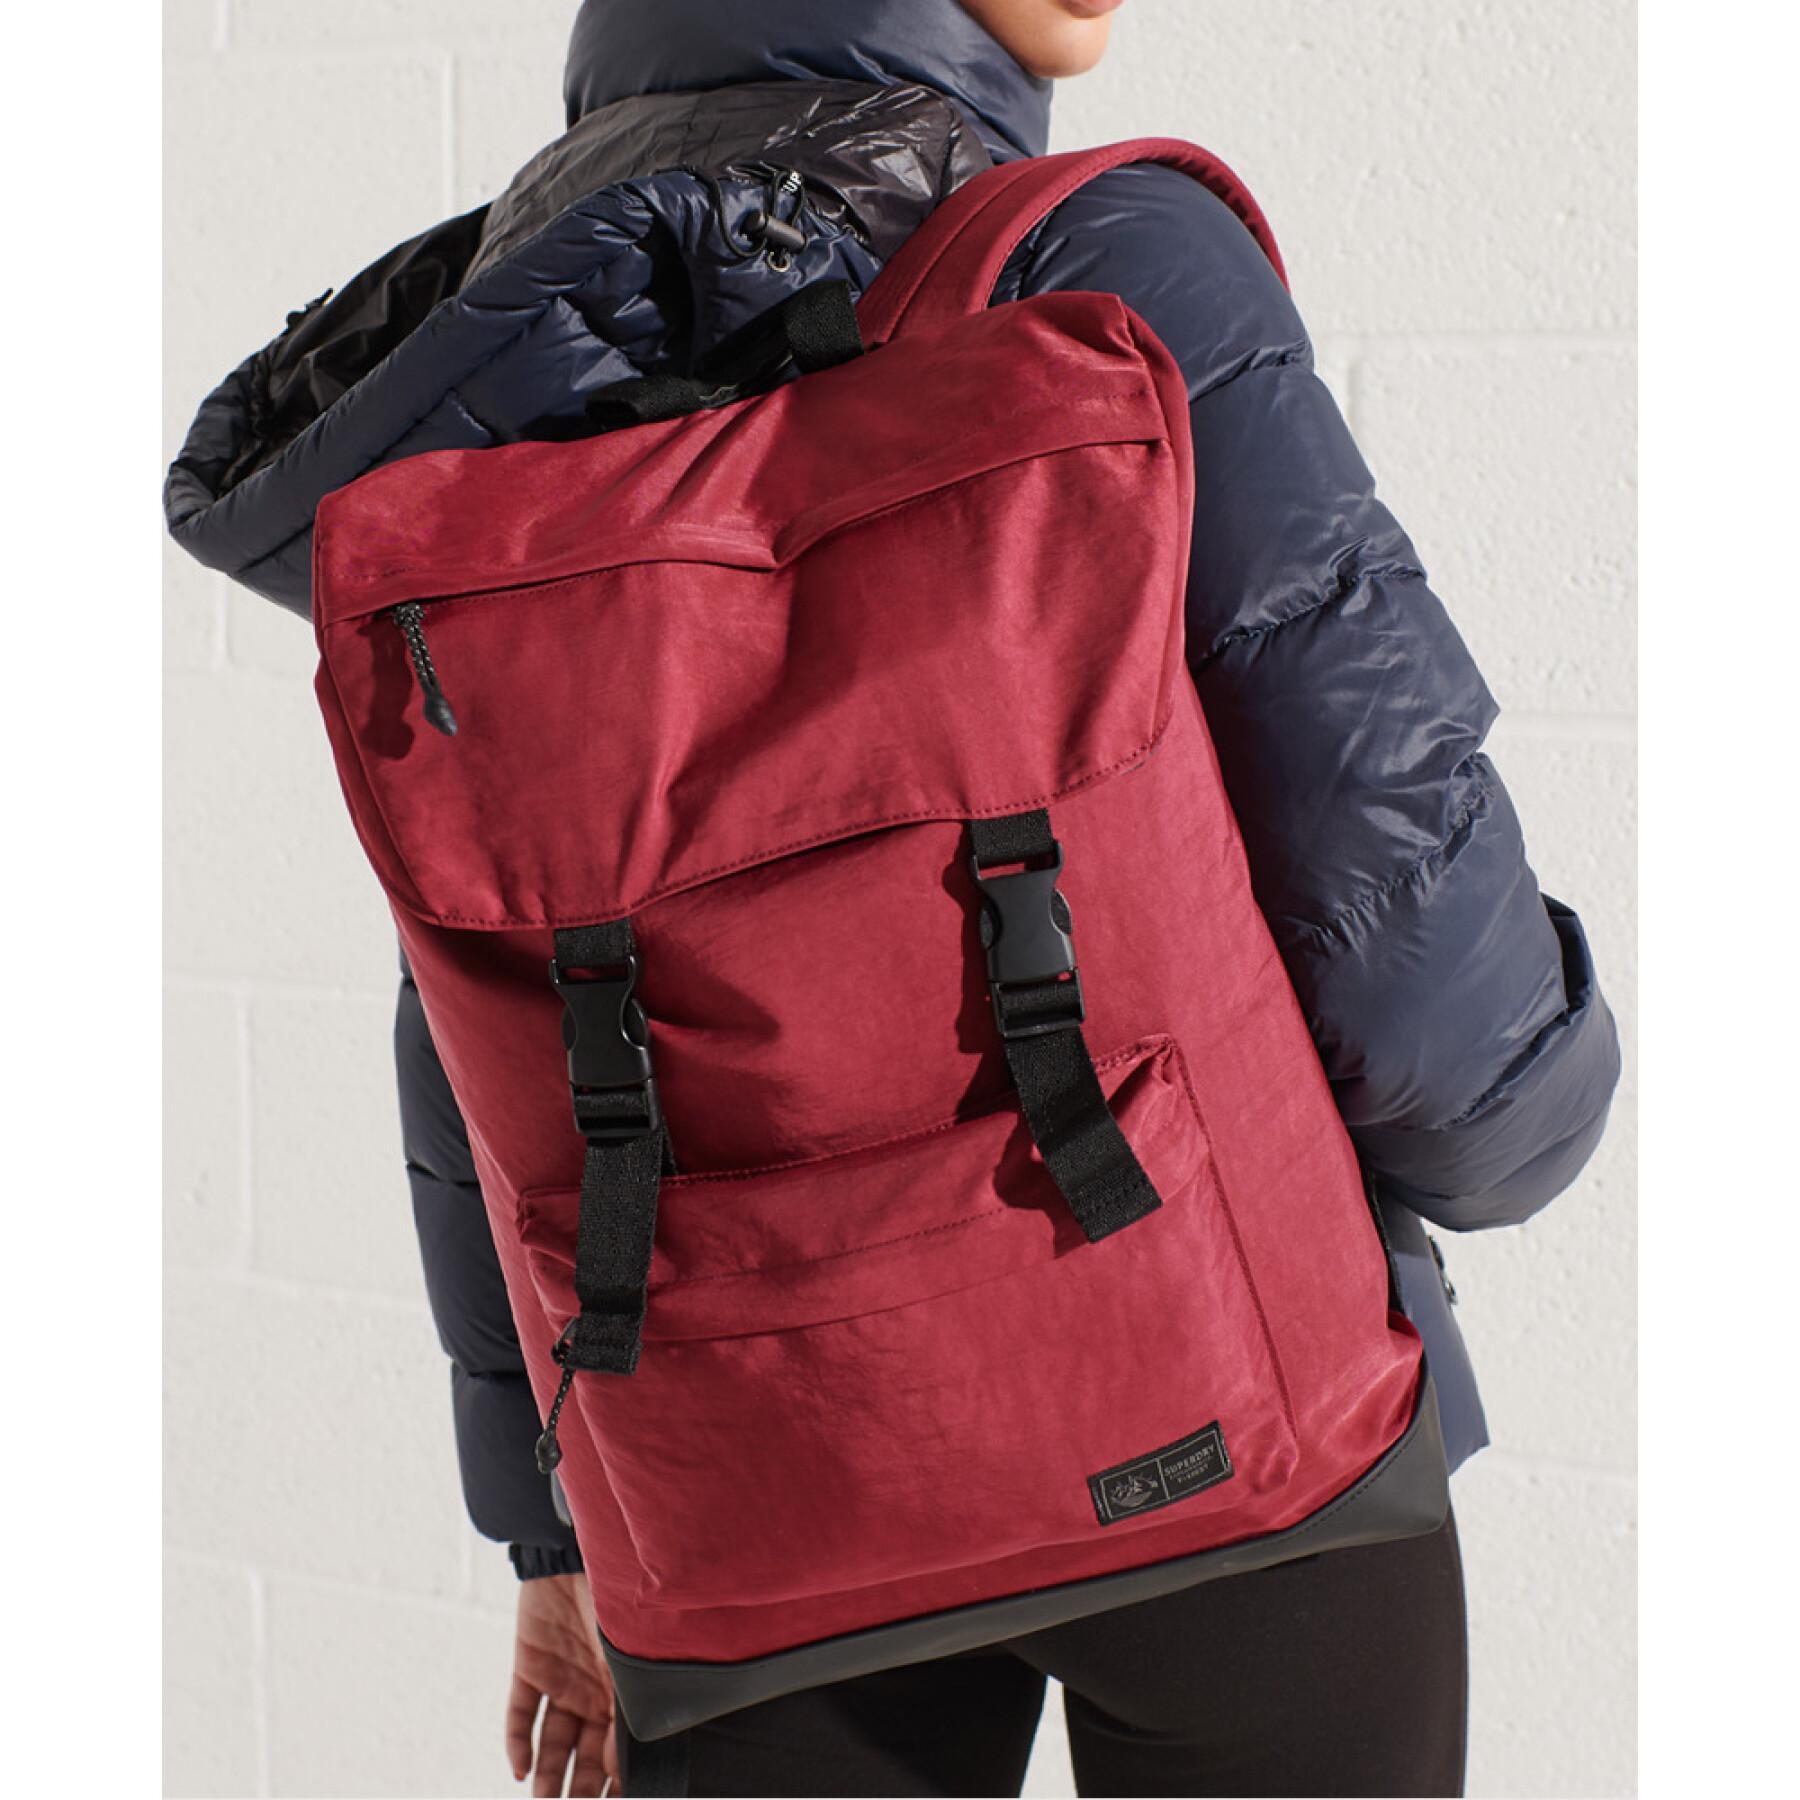 Backpack Superdry Expedition Toploader